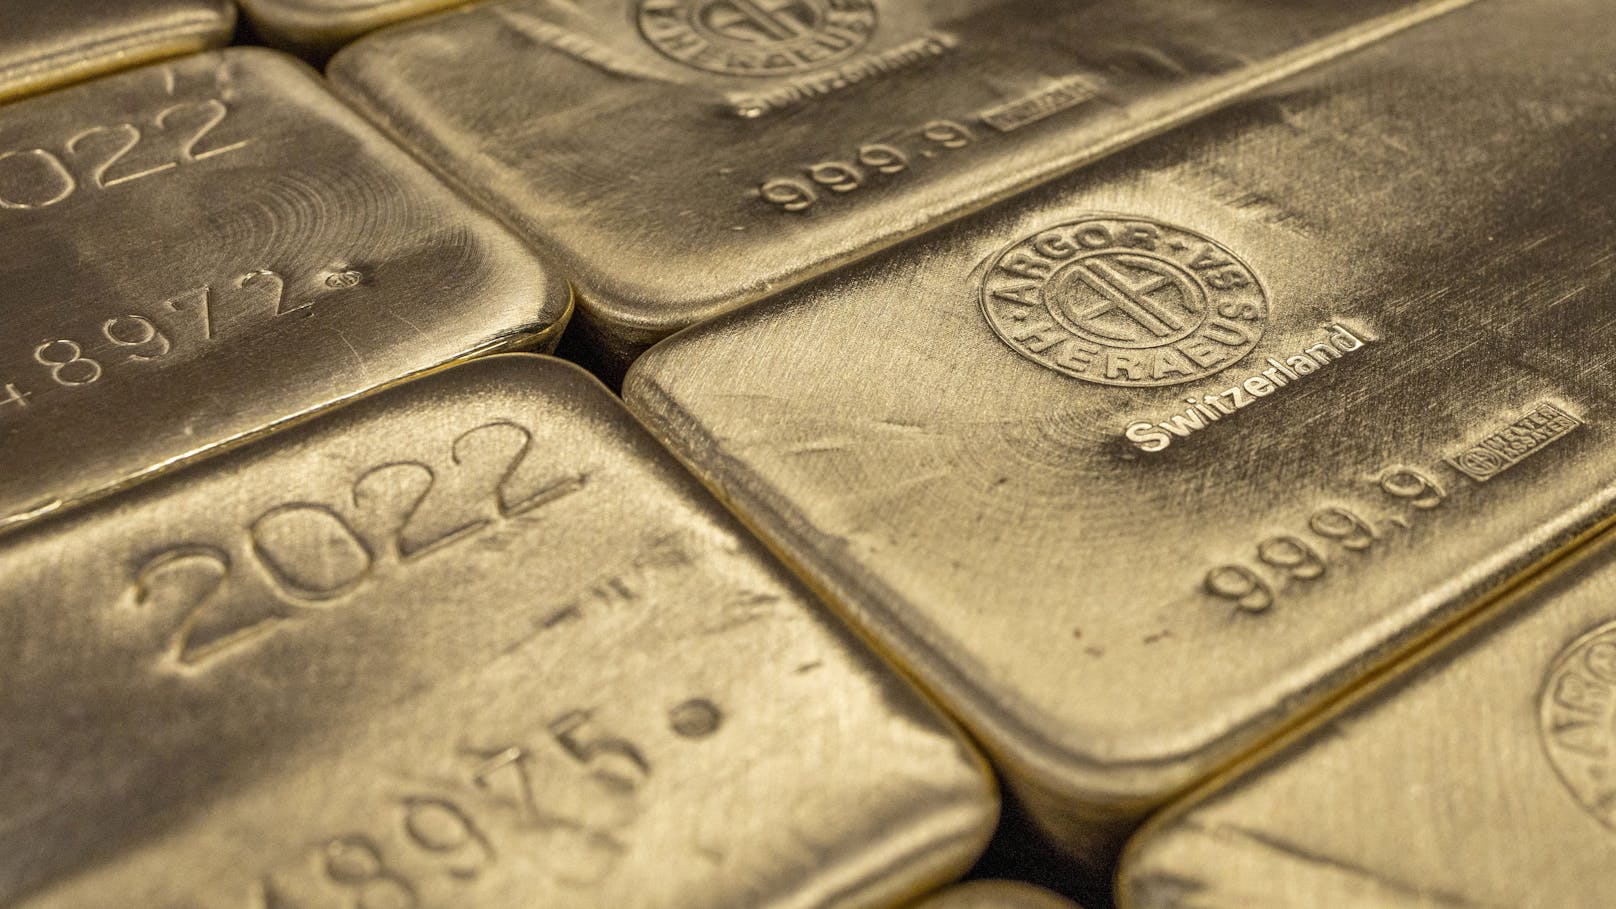 Goldpreis schießt auf Allzeithoch – soll weiter steigen